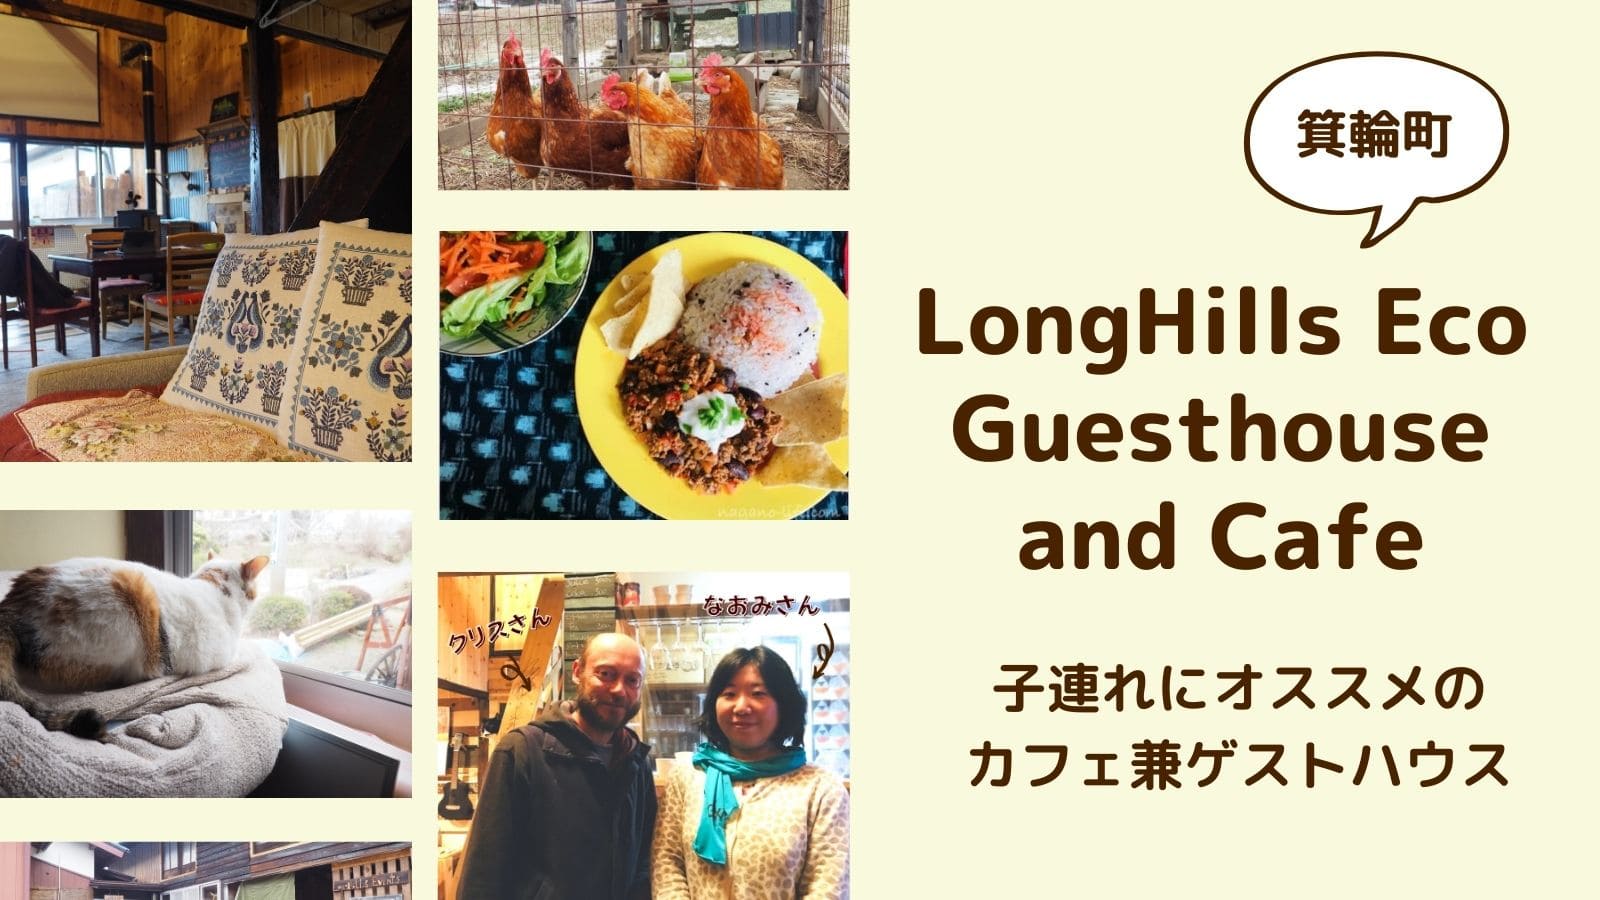 ロングヒルズさん LongHills Eco Guesthouse and cafe 箕輪町